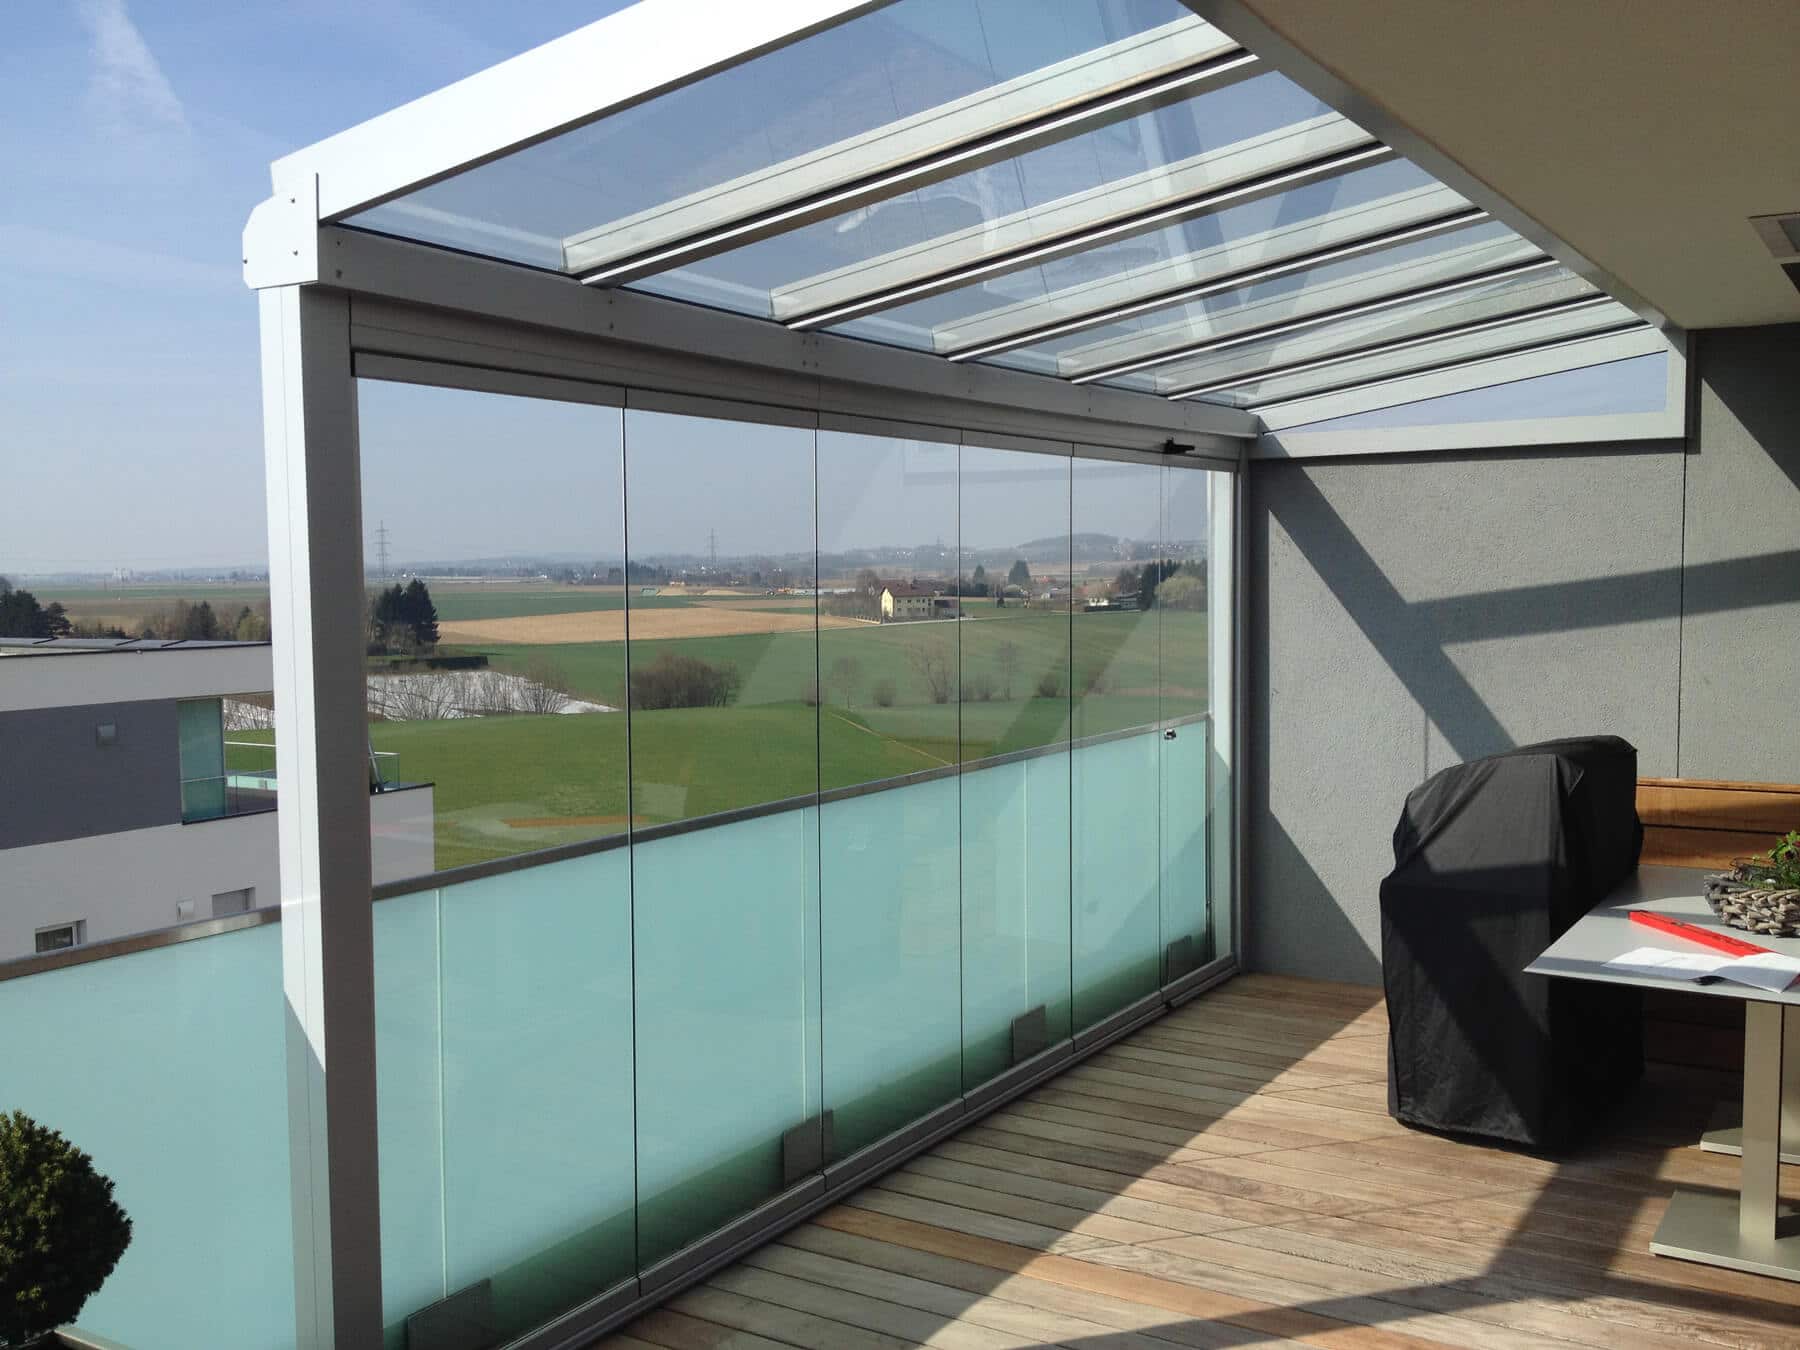 Terrassenüberdachung mit Glasdach